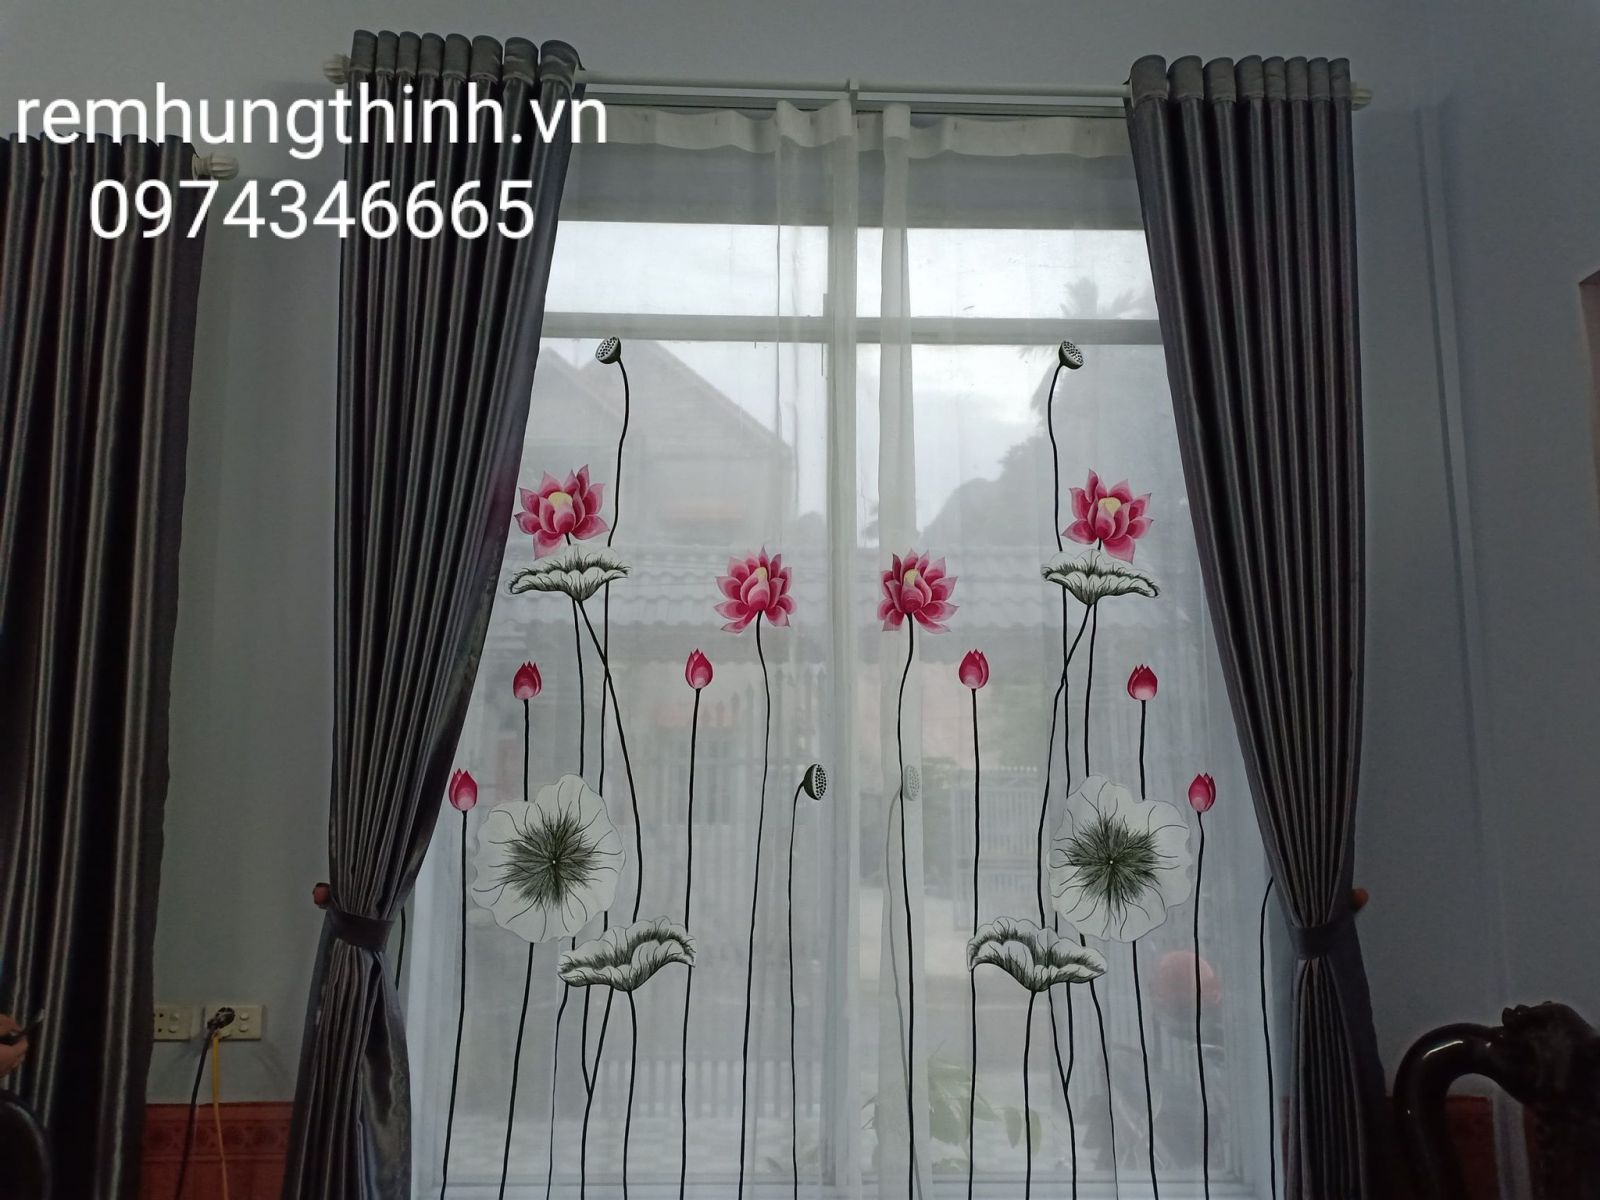 Địa chỉ cung cấp rèm vải voan thêu tay uy tín tại thành phố Hồ Chí Minh